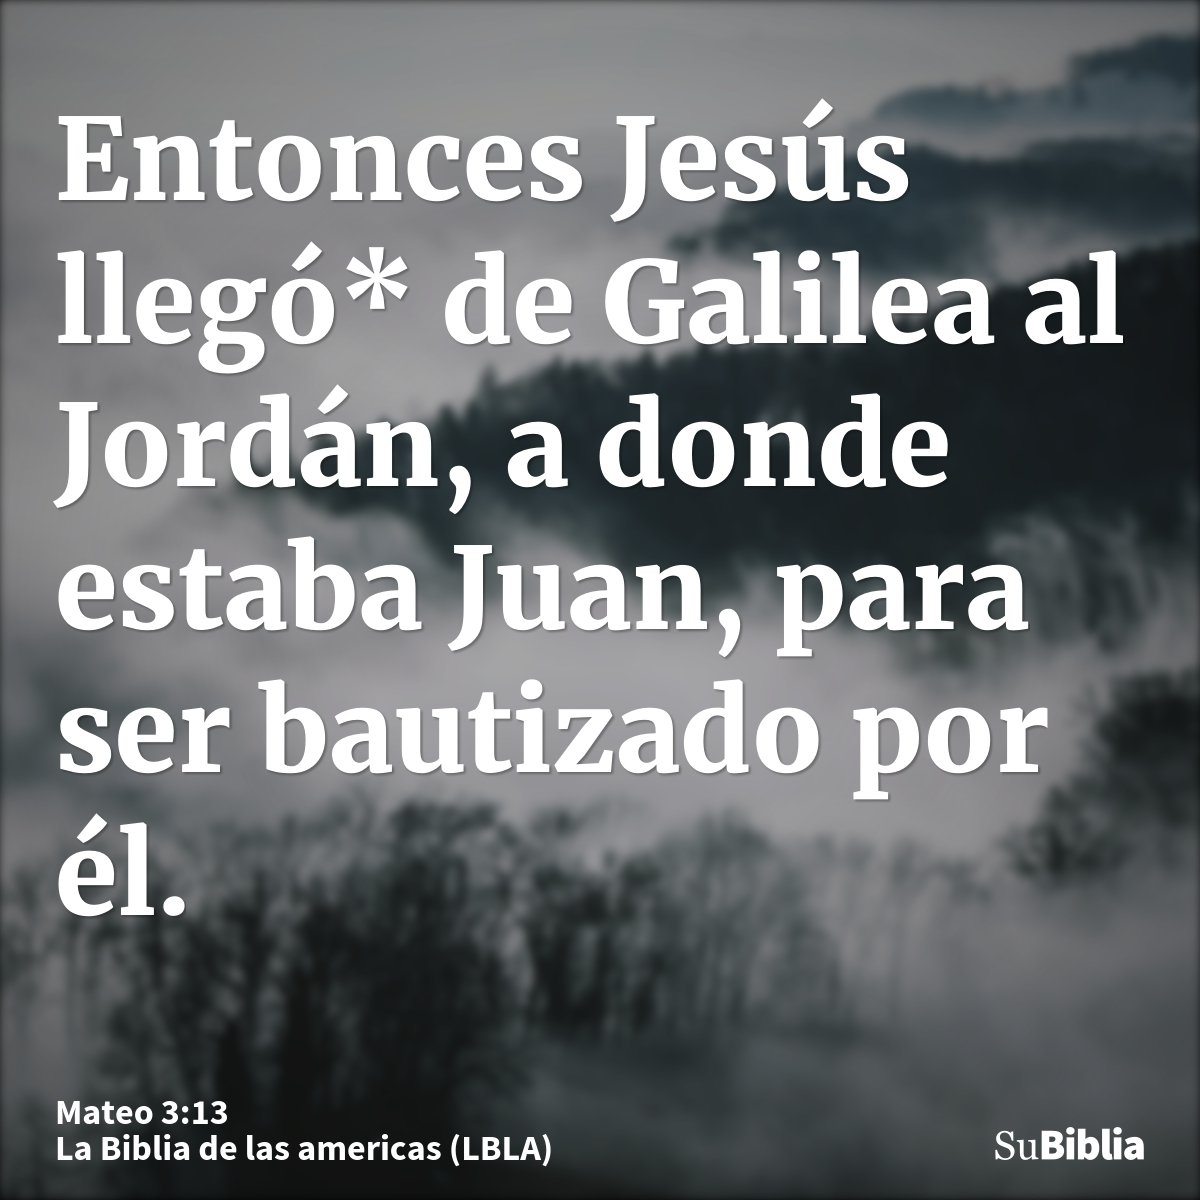 Entonces Jesús llegó* de Galilea al Jordán, a donde estaba Juan, para ser bautizado por él.